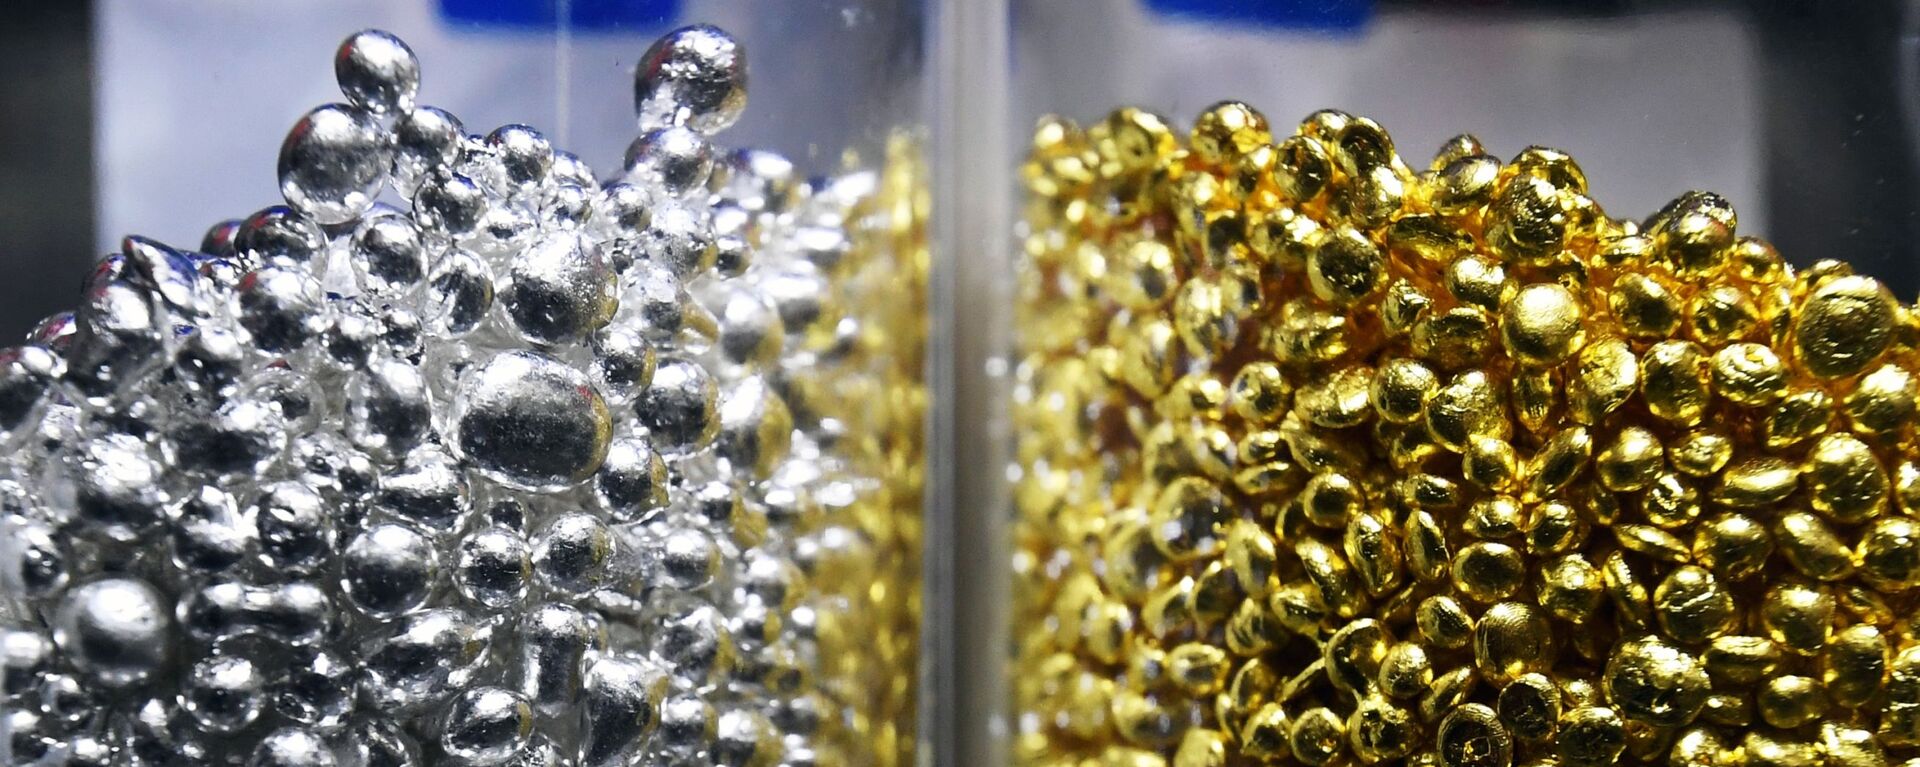 Гранулдардагы 99,99 пайыздык эң жогорку стандарттагы тазаланган алтын жана күмүш. Архив - Sputnik Кыргызстан, 1920, 19.05.2021